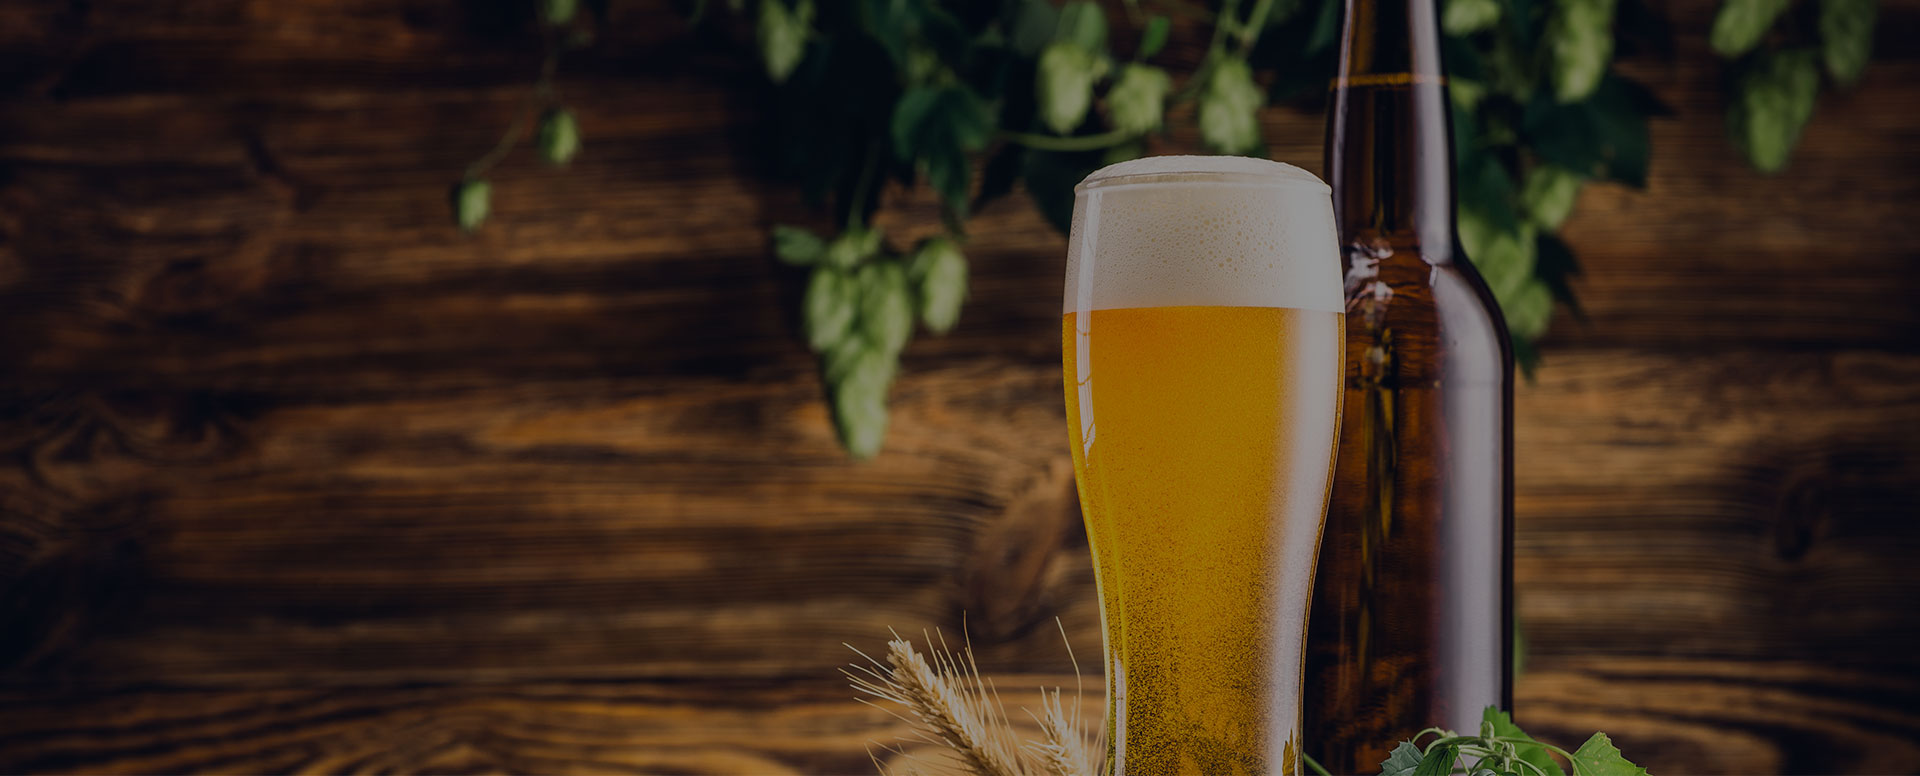 Beer / Cider